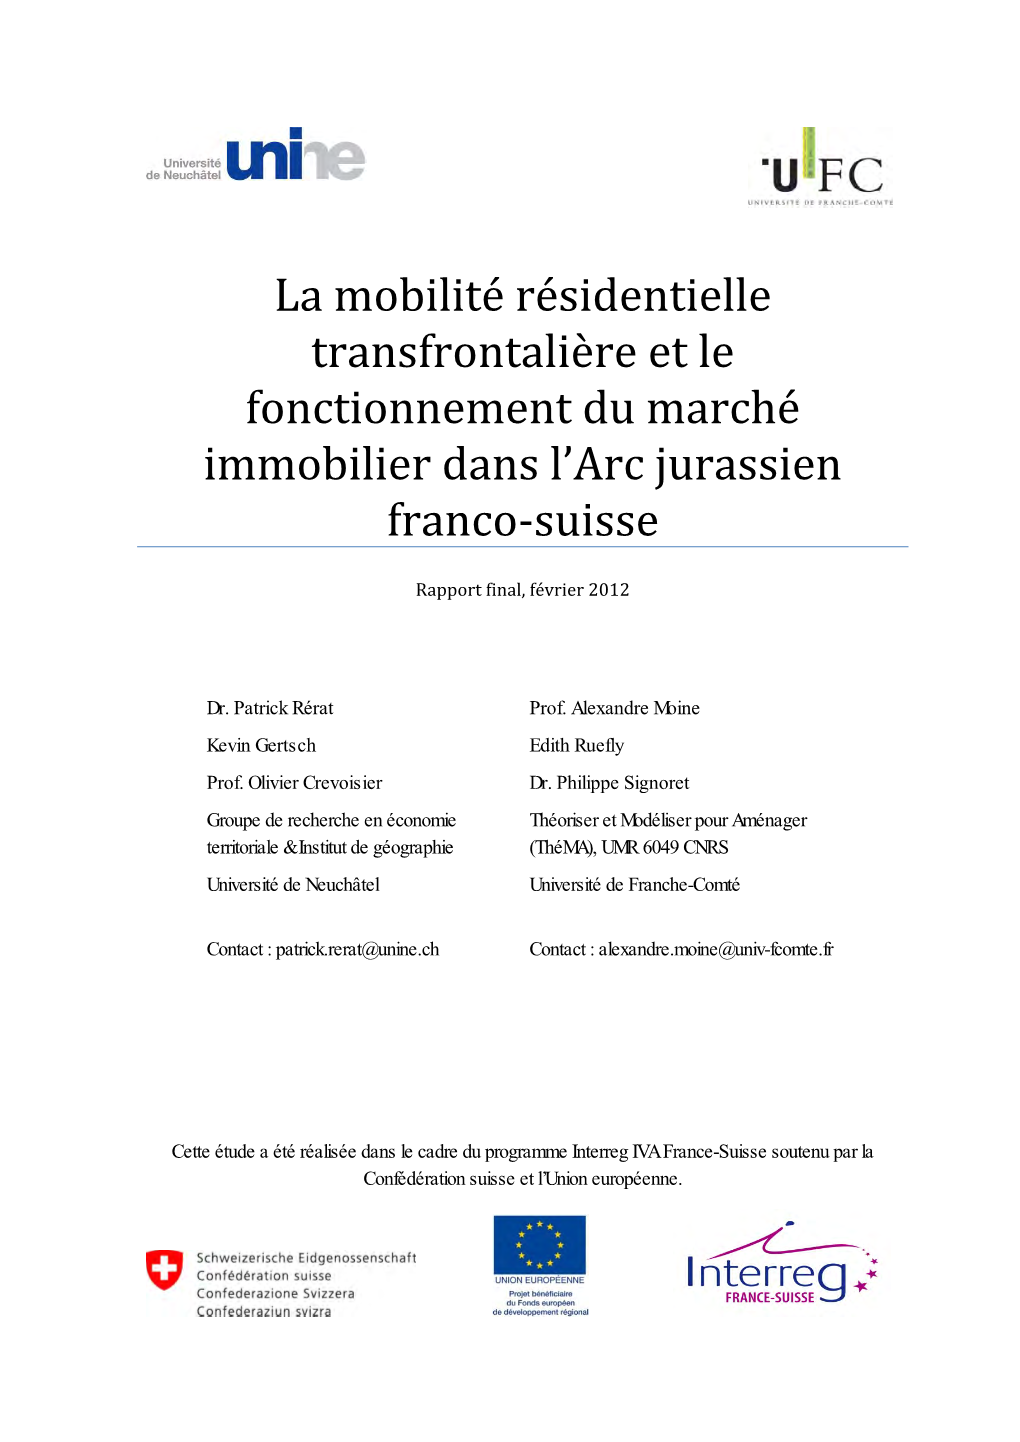 La Mobilité Résidentielle Transfrontalière Et Le Fonctionnement Du Marché Immobilier Dans L’Arc Jurassien Franco‐Suisse